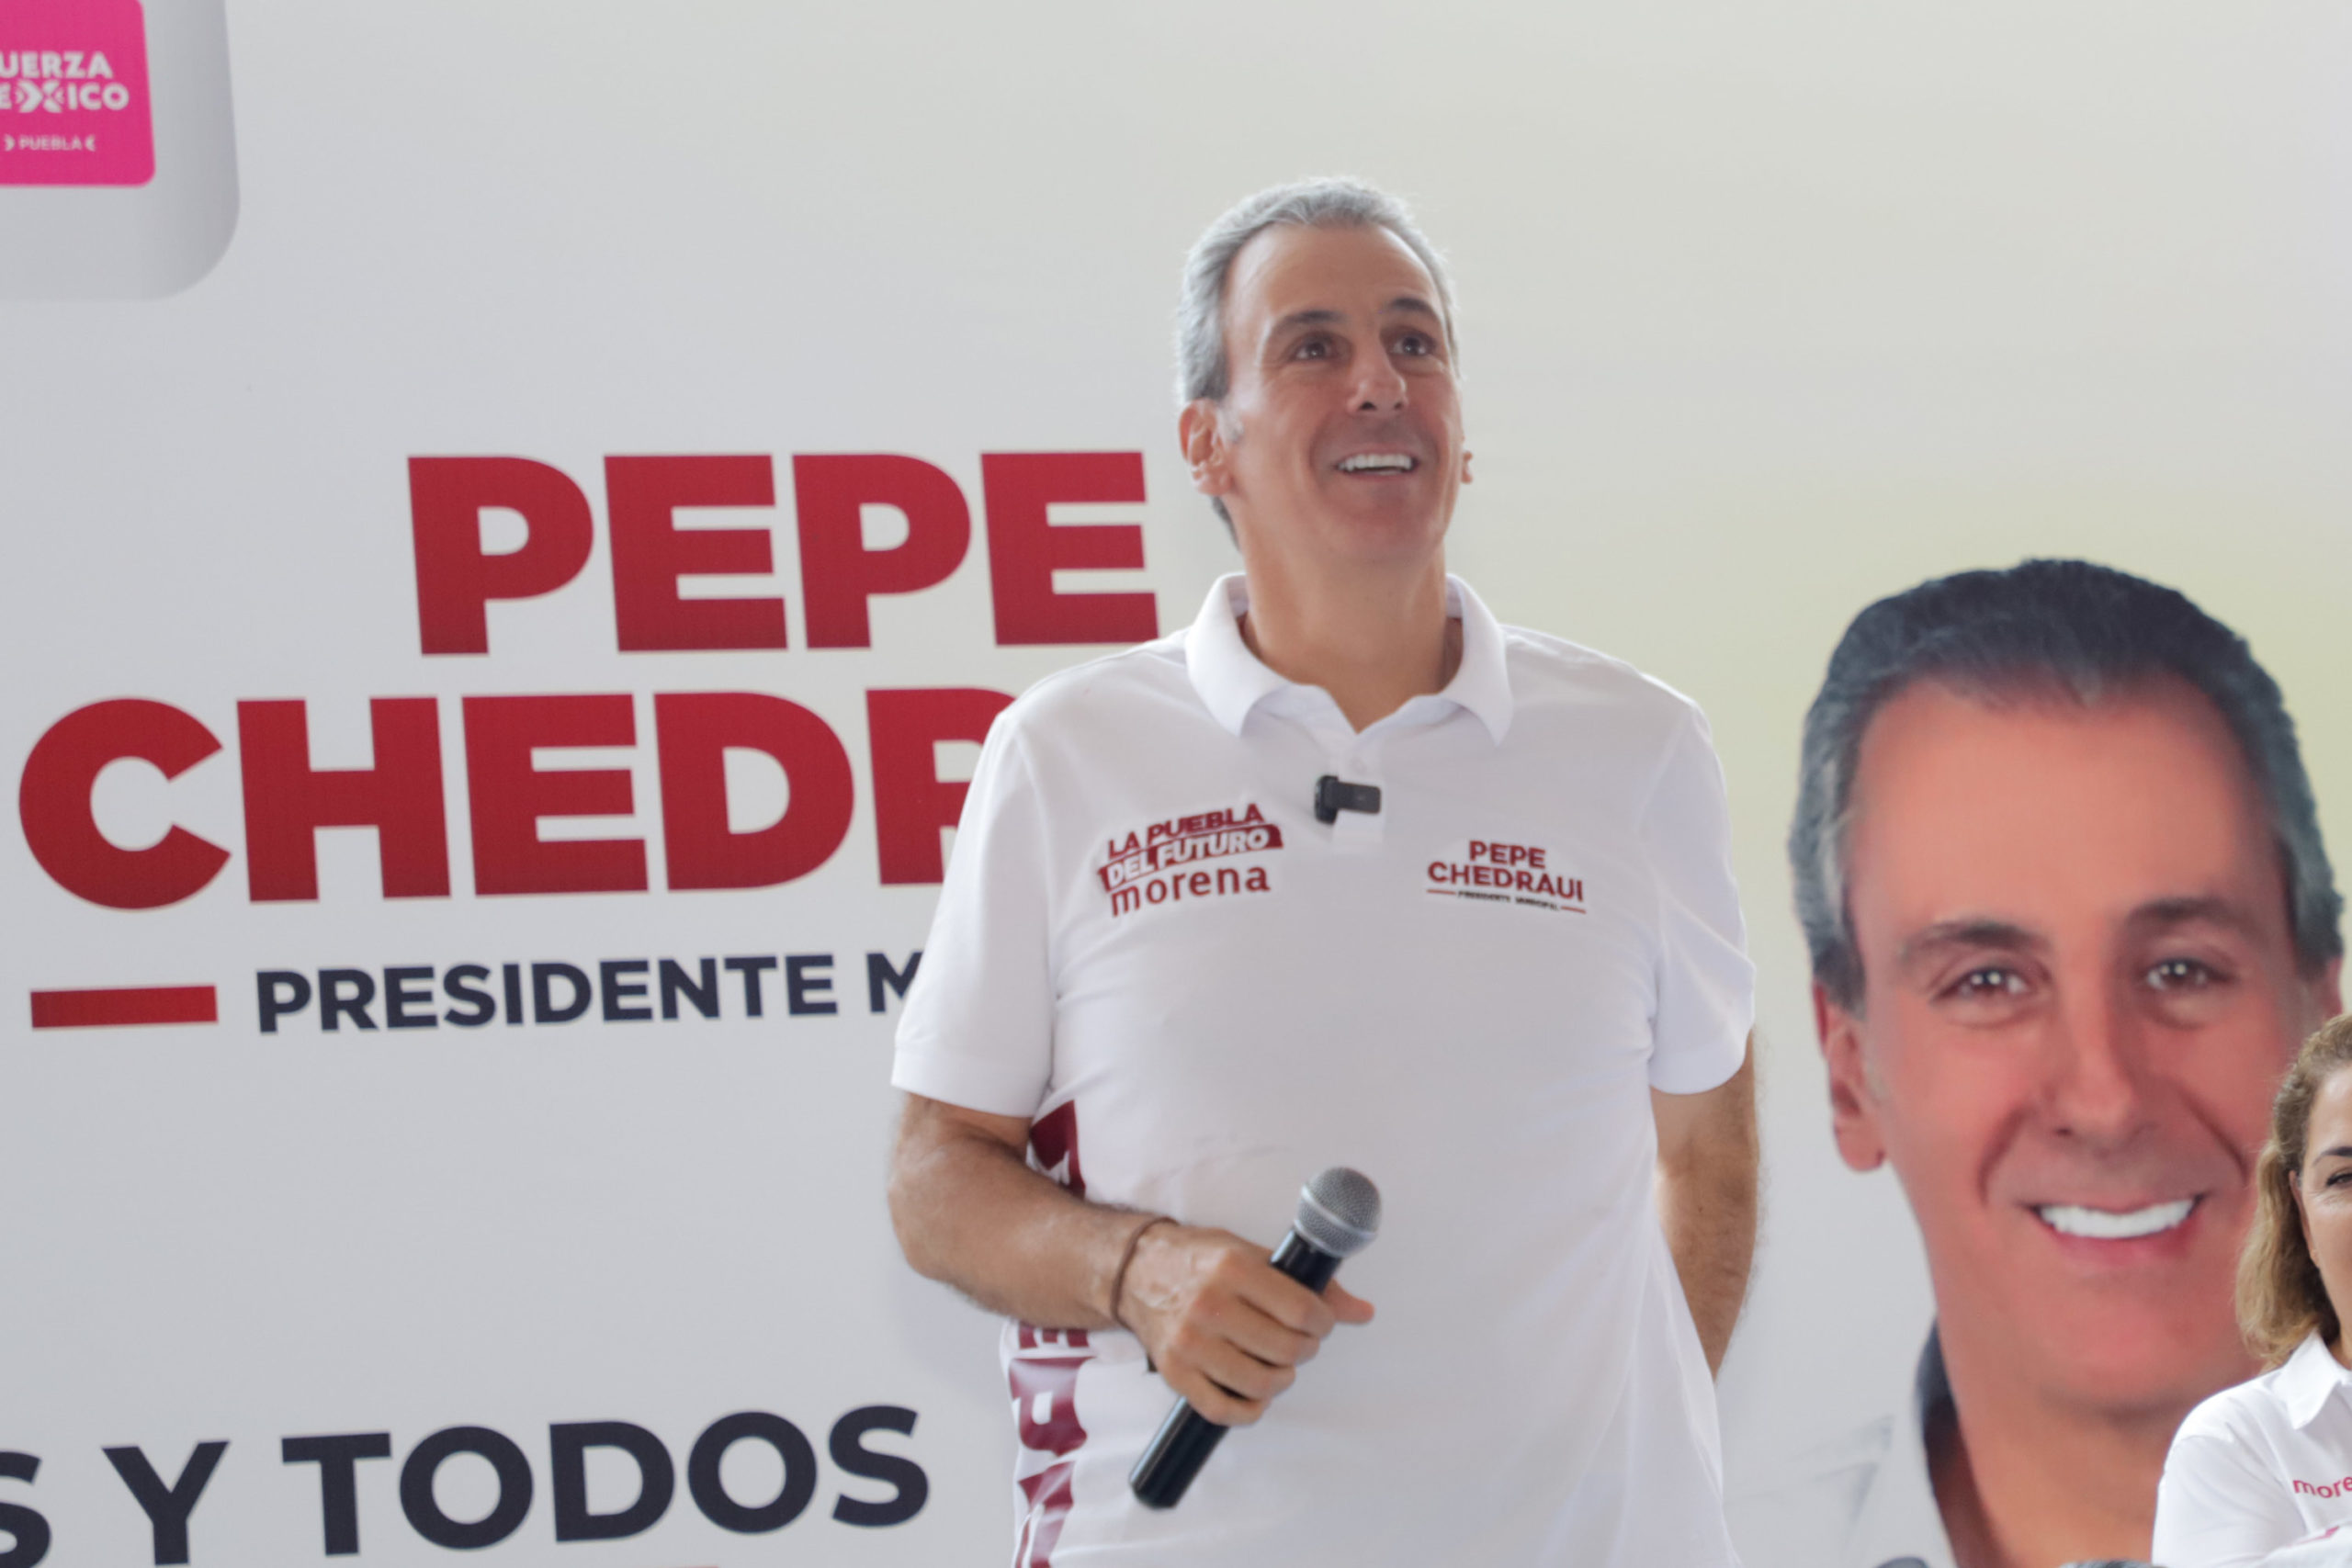 Pepe Chedraui prevé obtener 400 mil votos el 2 de junio